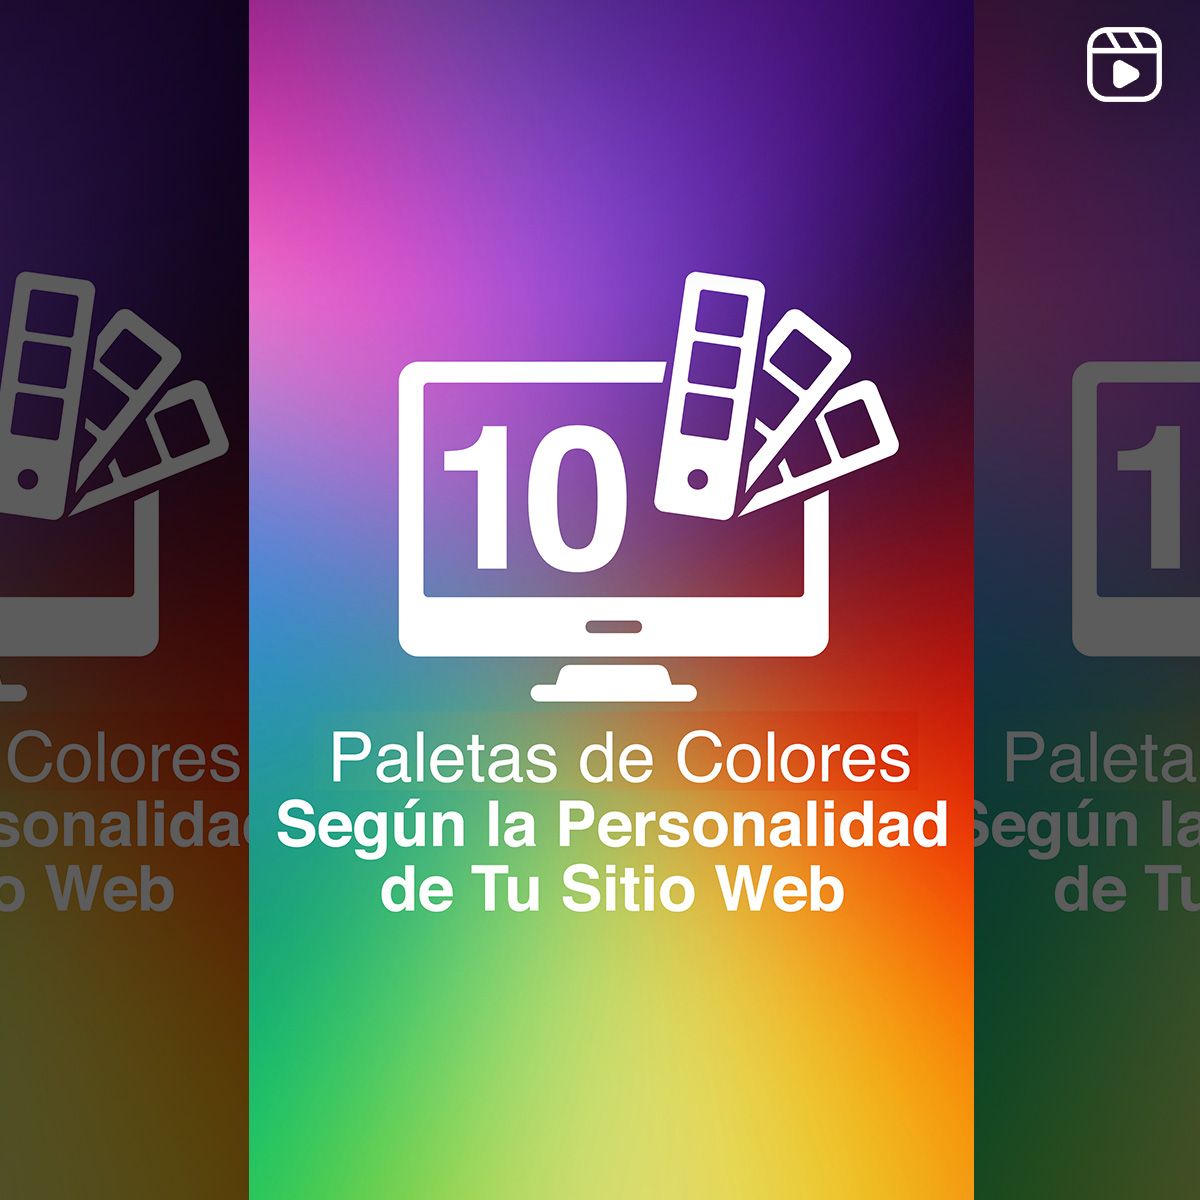 10 Paletas de Colores Según la Personalidad de tu Sitio Web